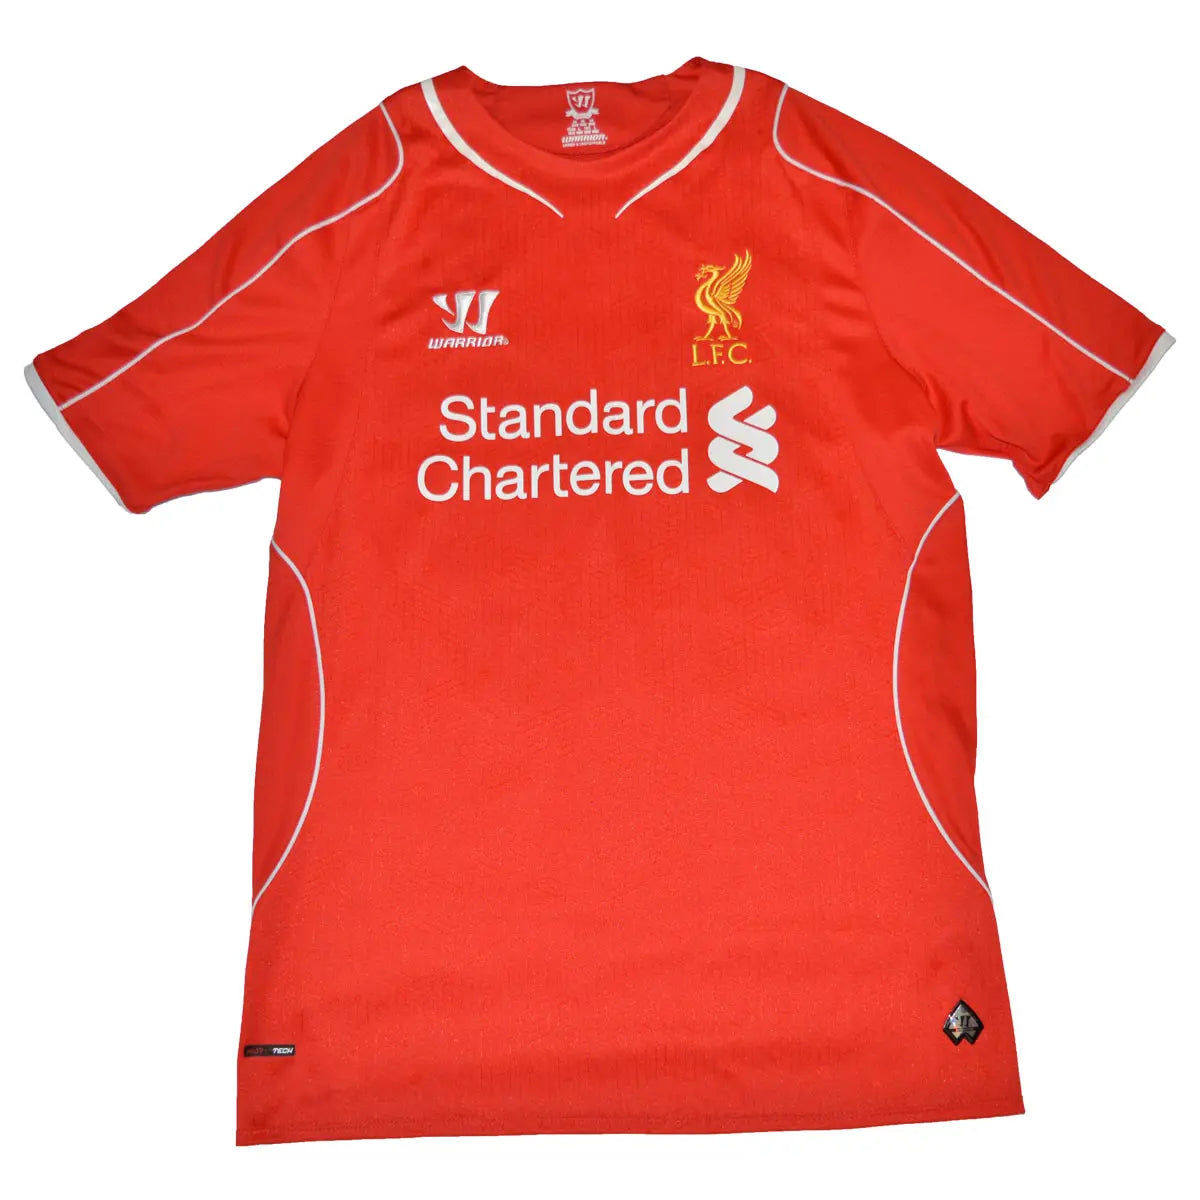 Maillot de foot rétro/vintage authentique rouge warrior Liverpool domicile 2014-2015 Balotelli